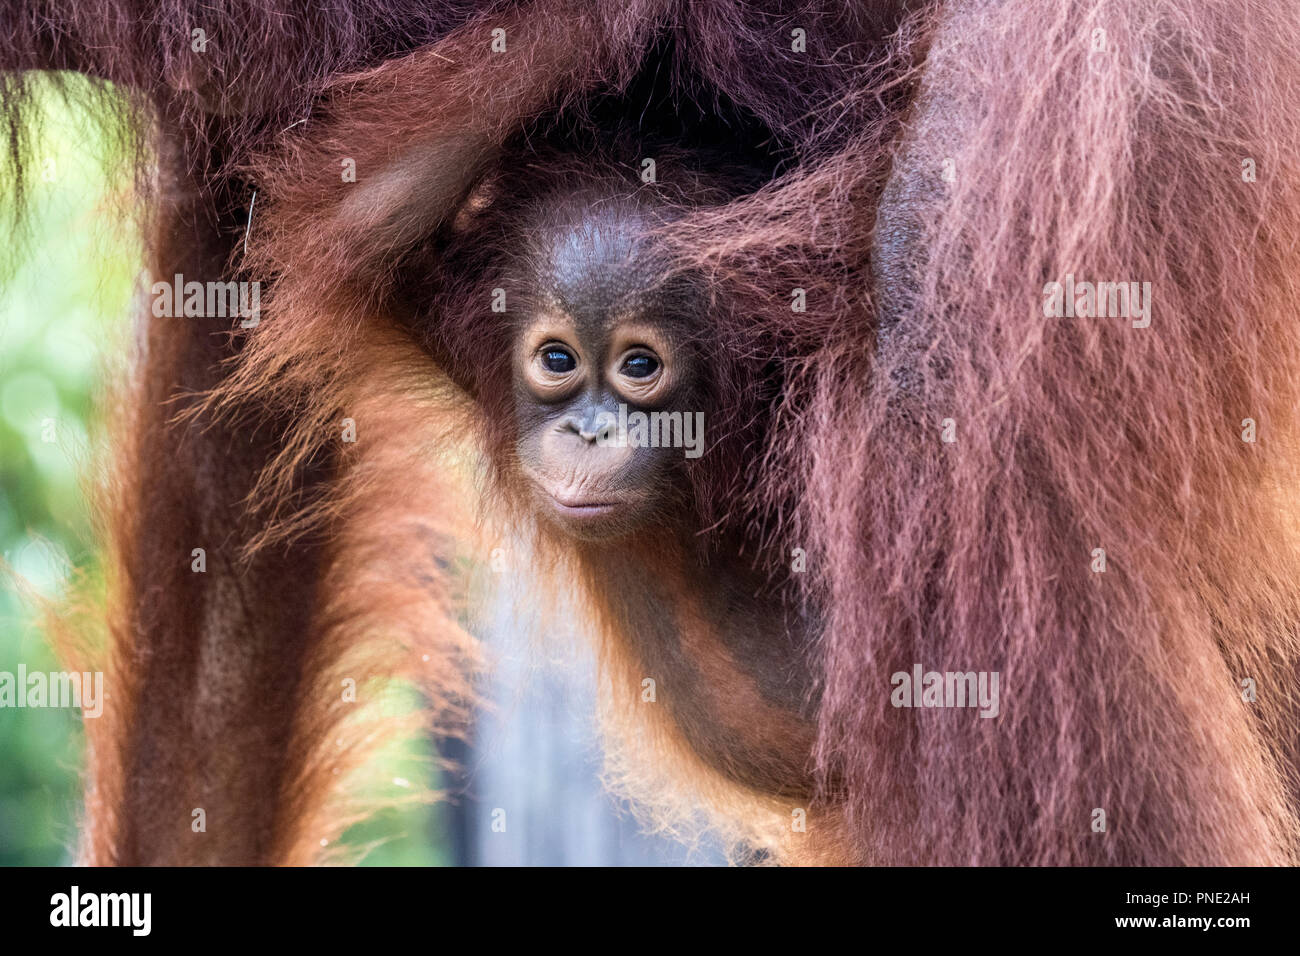 La madre e il bambino Bornean orangutan, pongo pygmaeus, Buluh Kecil River, Borneo, Indonesia. Foto Stock